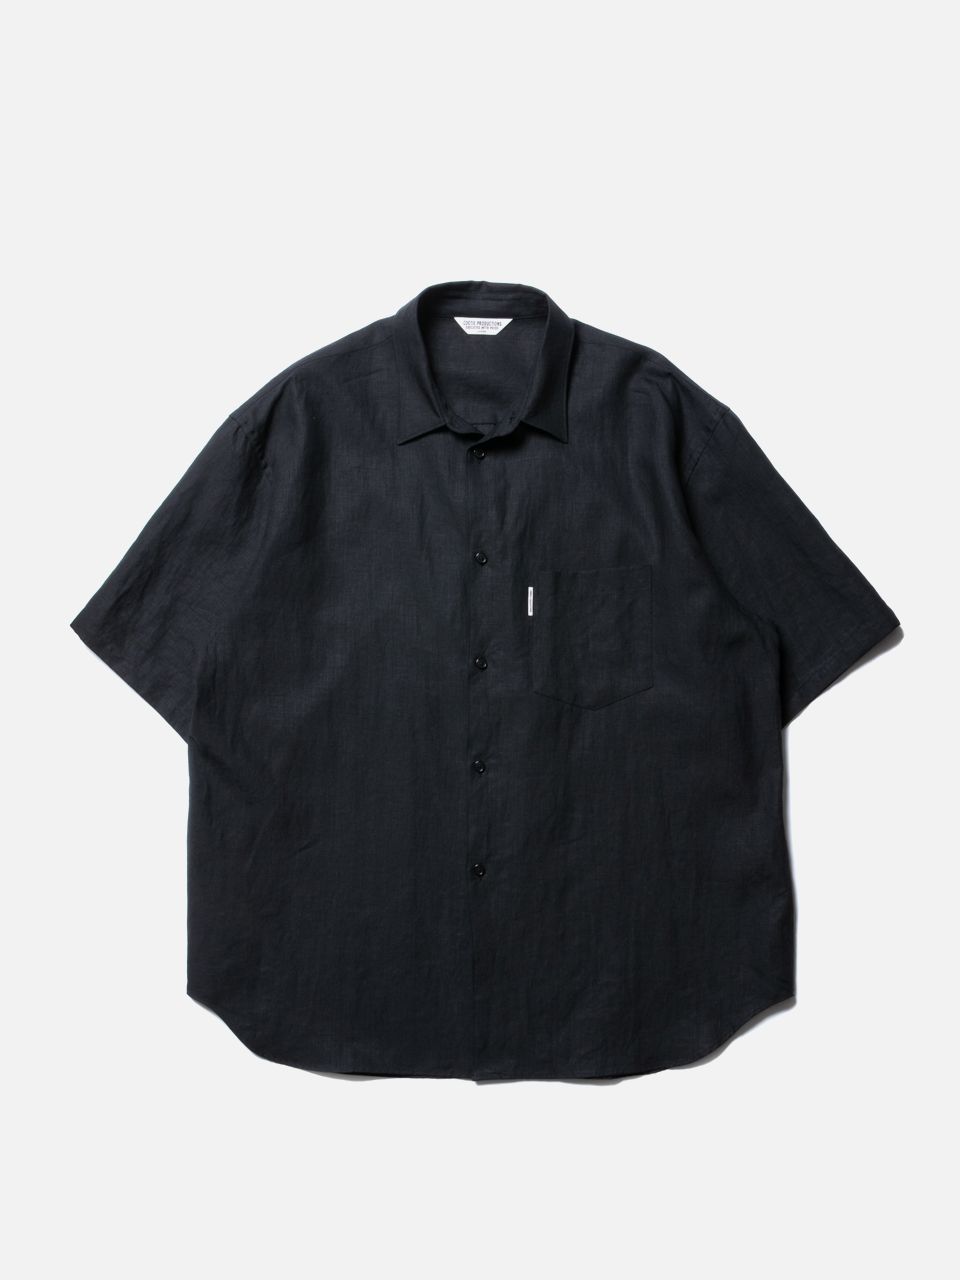 COOTIE 20ss Linen S/S Shirt